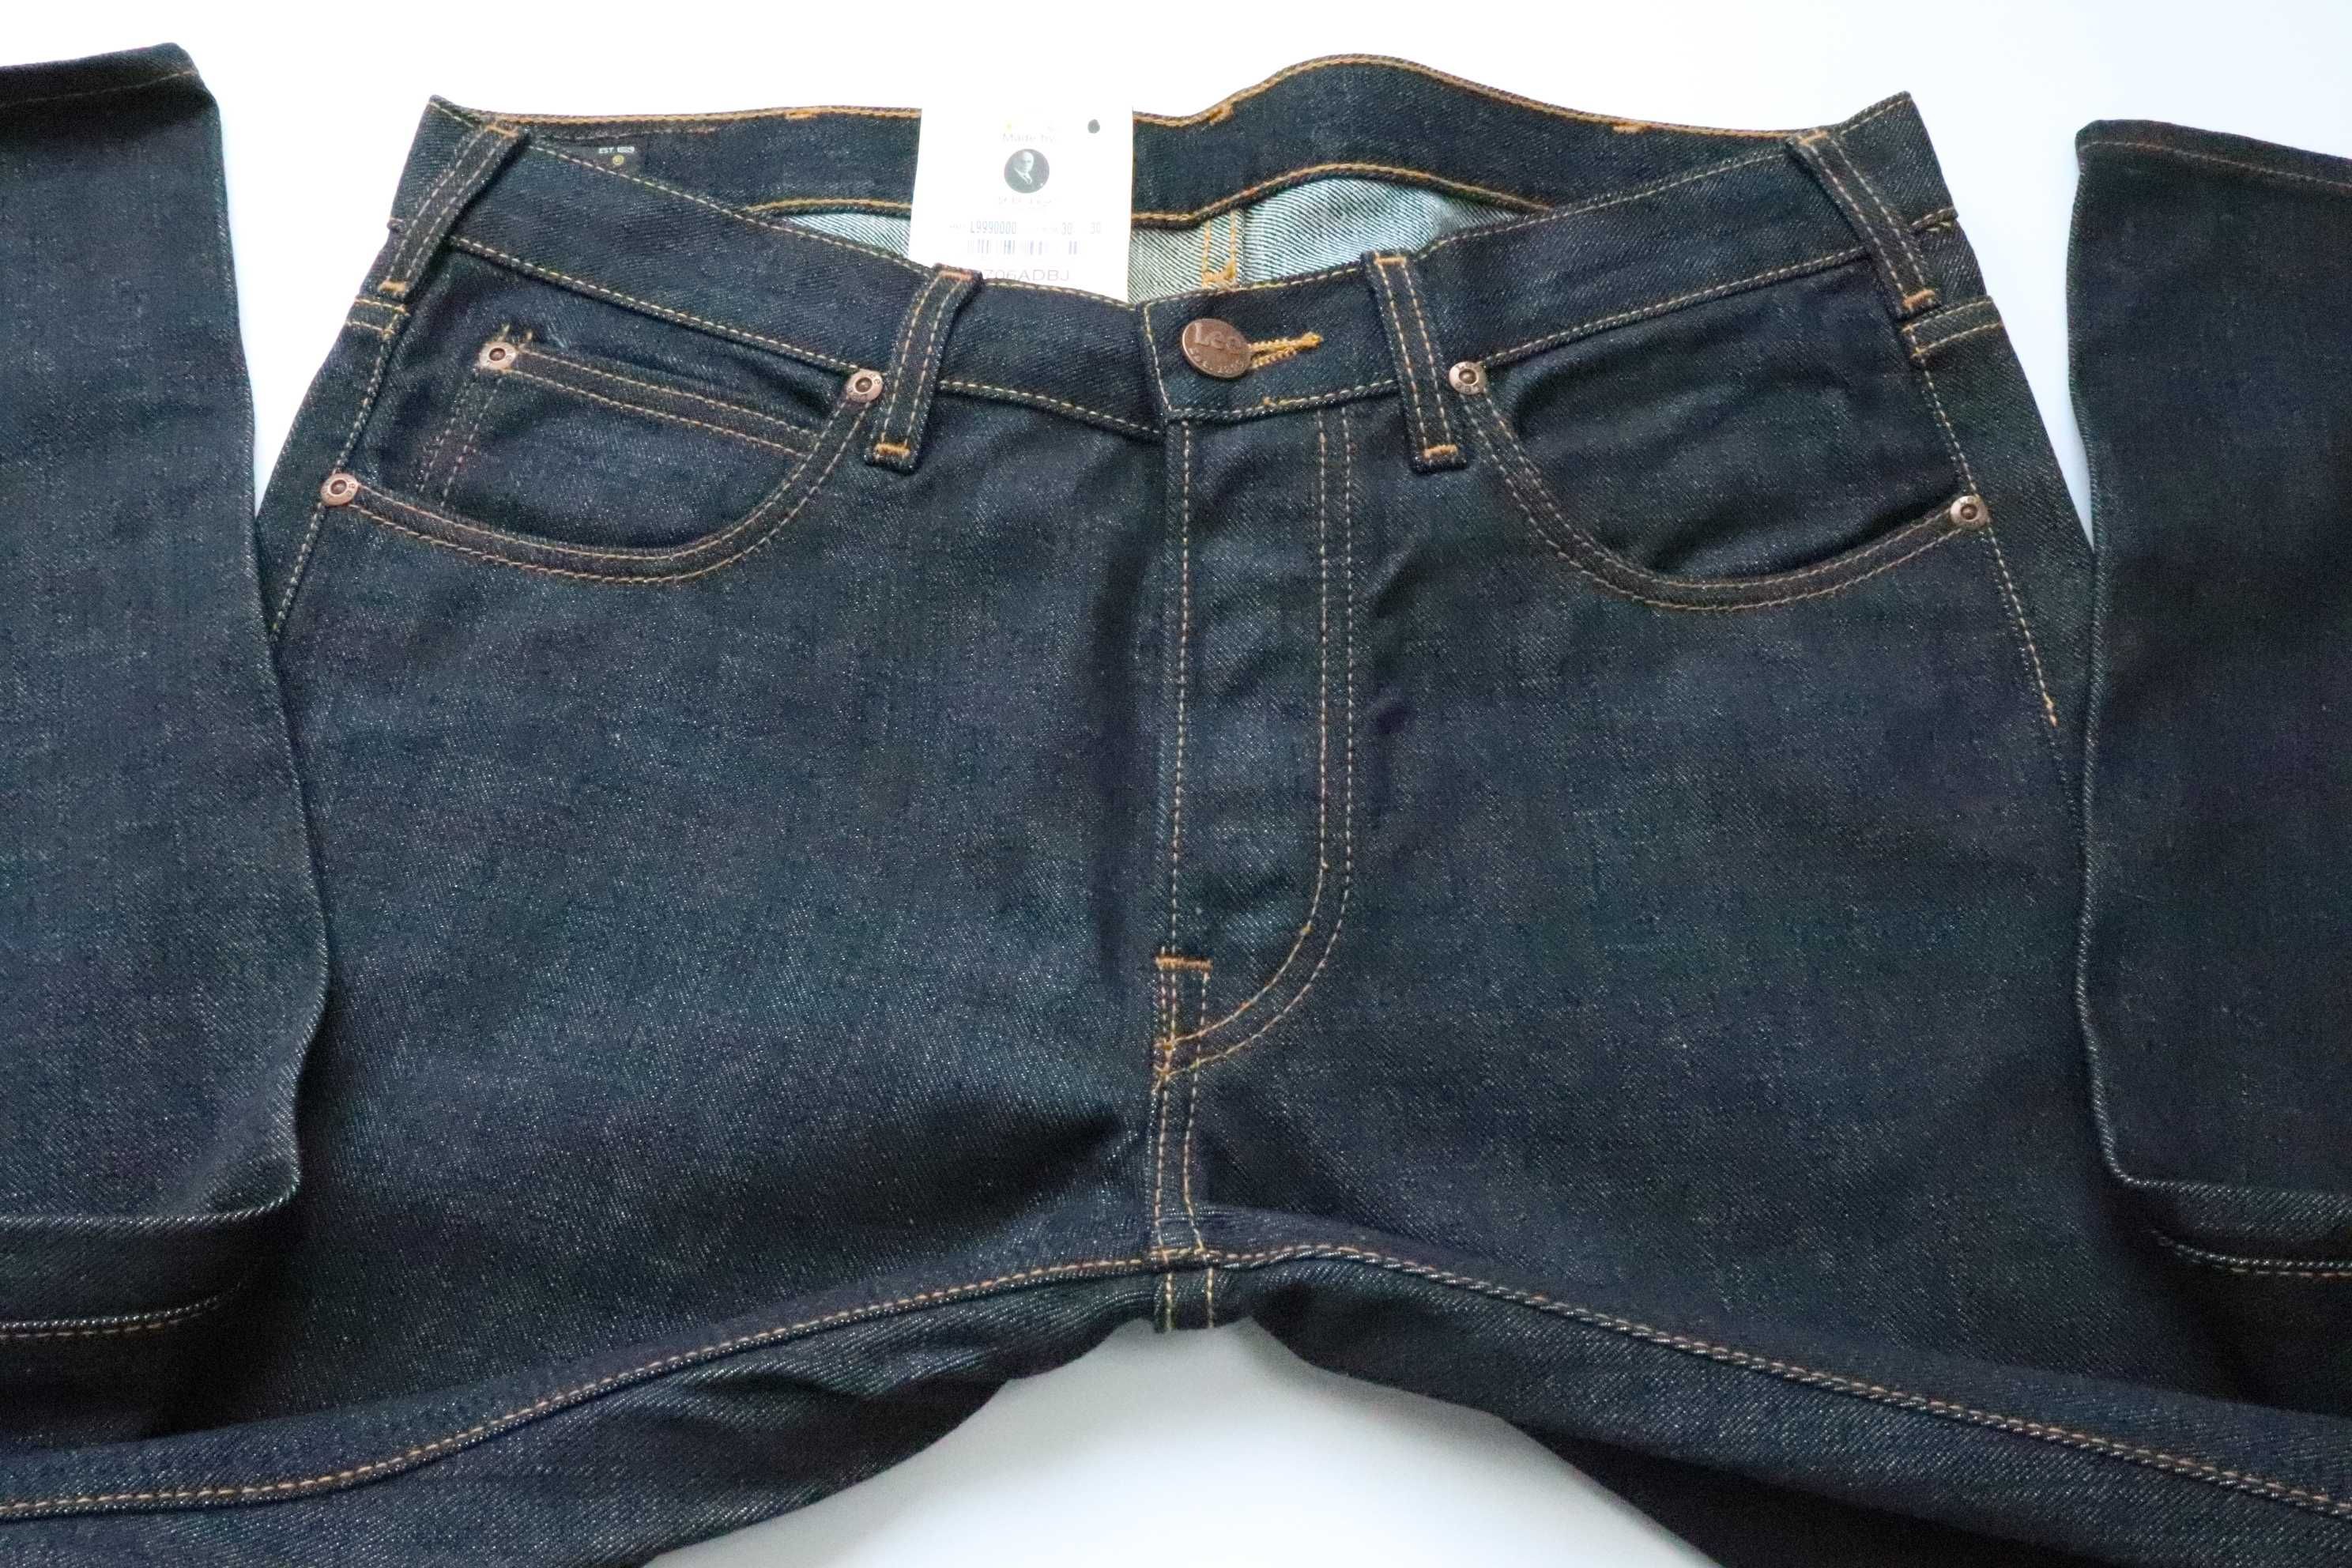 LEE DAREN REGULAR SLIM W32 L32 męskie spodnie jeansy nowe